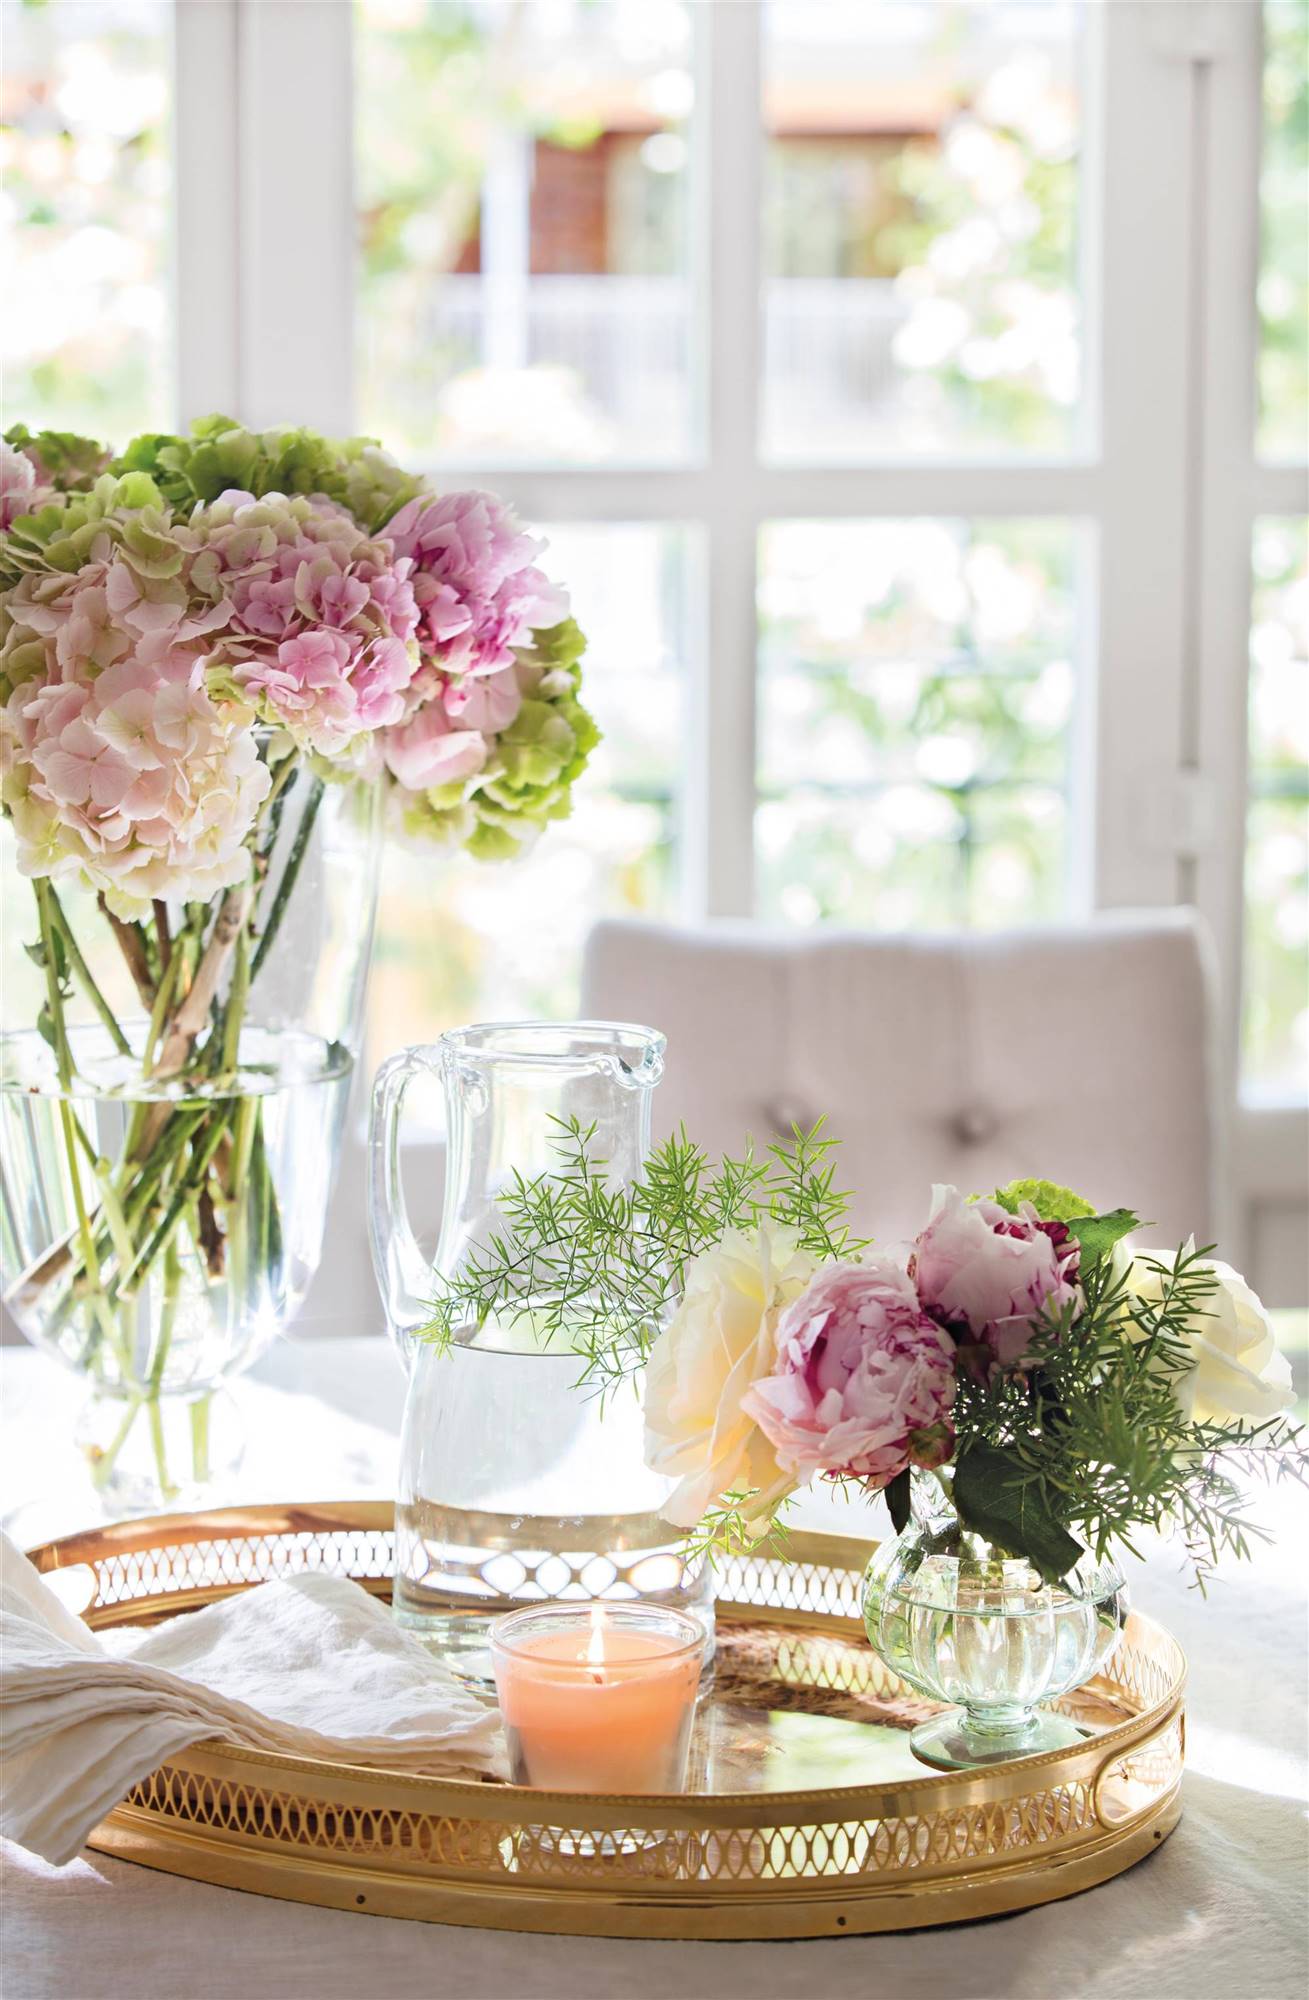 Detalle de mesa con jarrón con flores, bandeja dorada y vela.